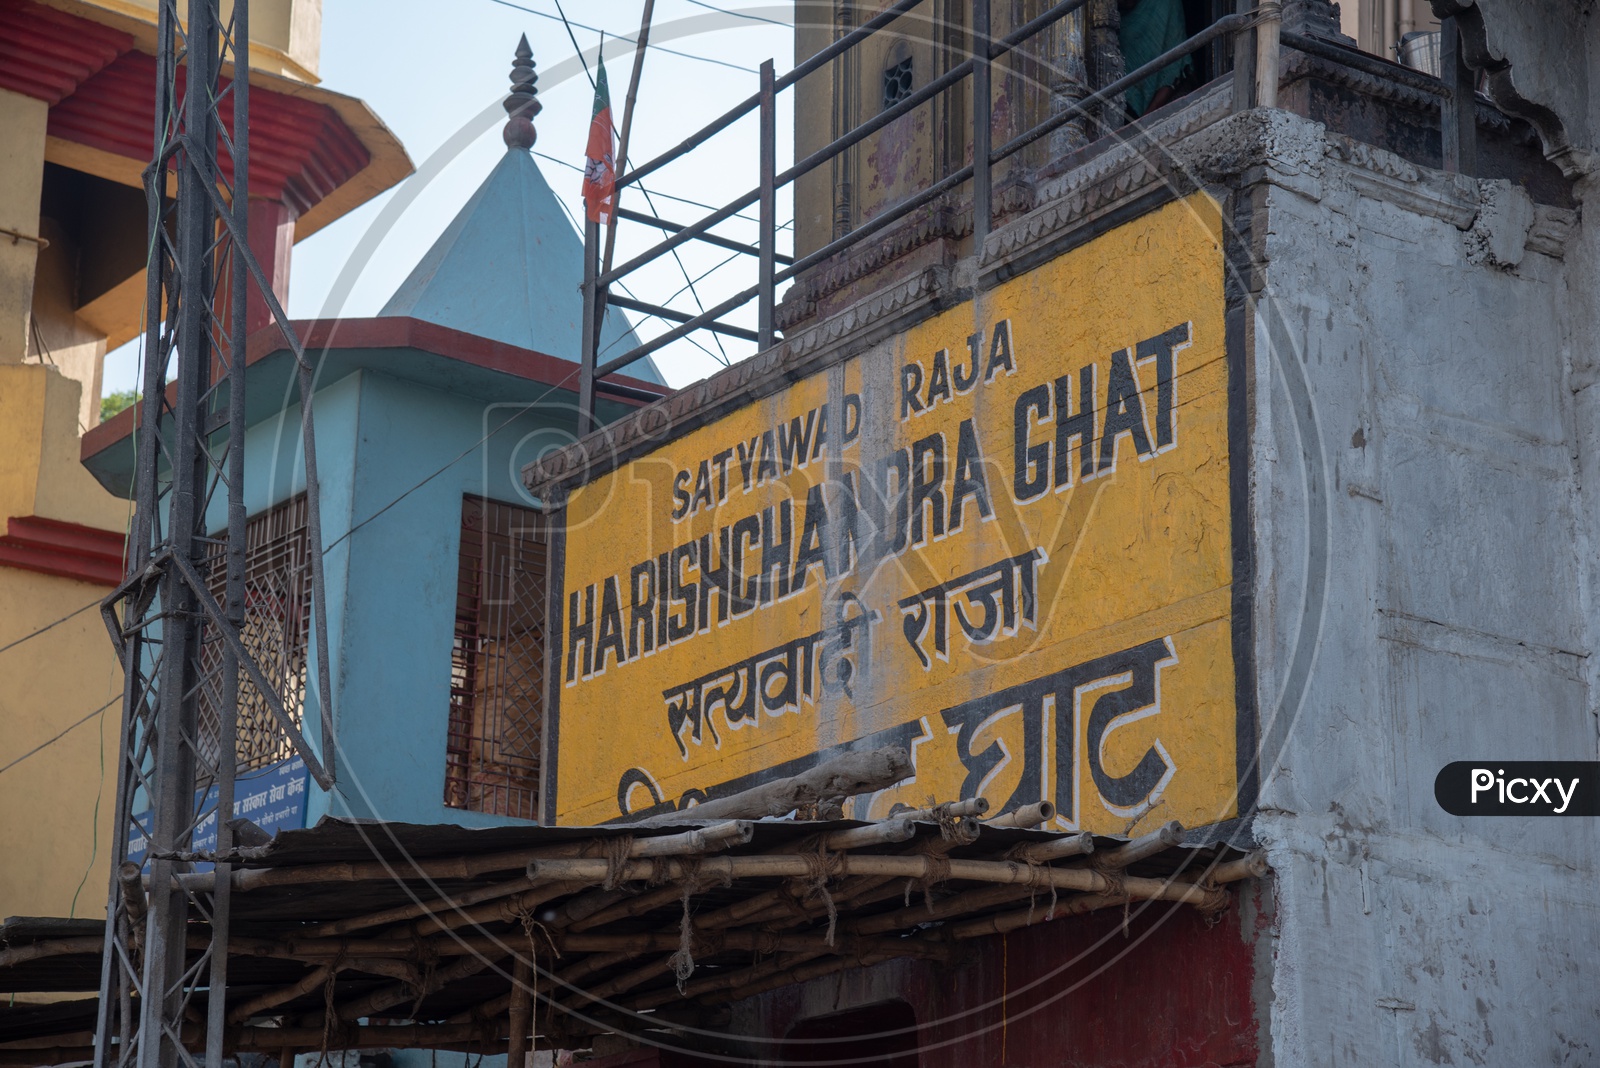 Satyavadi Raja Harishchandra Ghat  In Varanasi